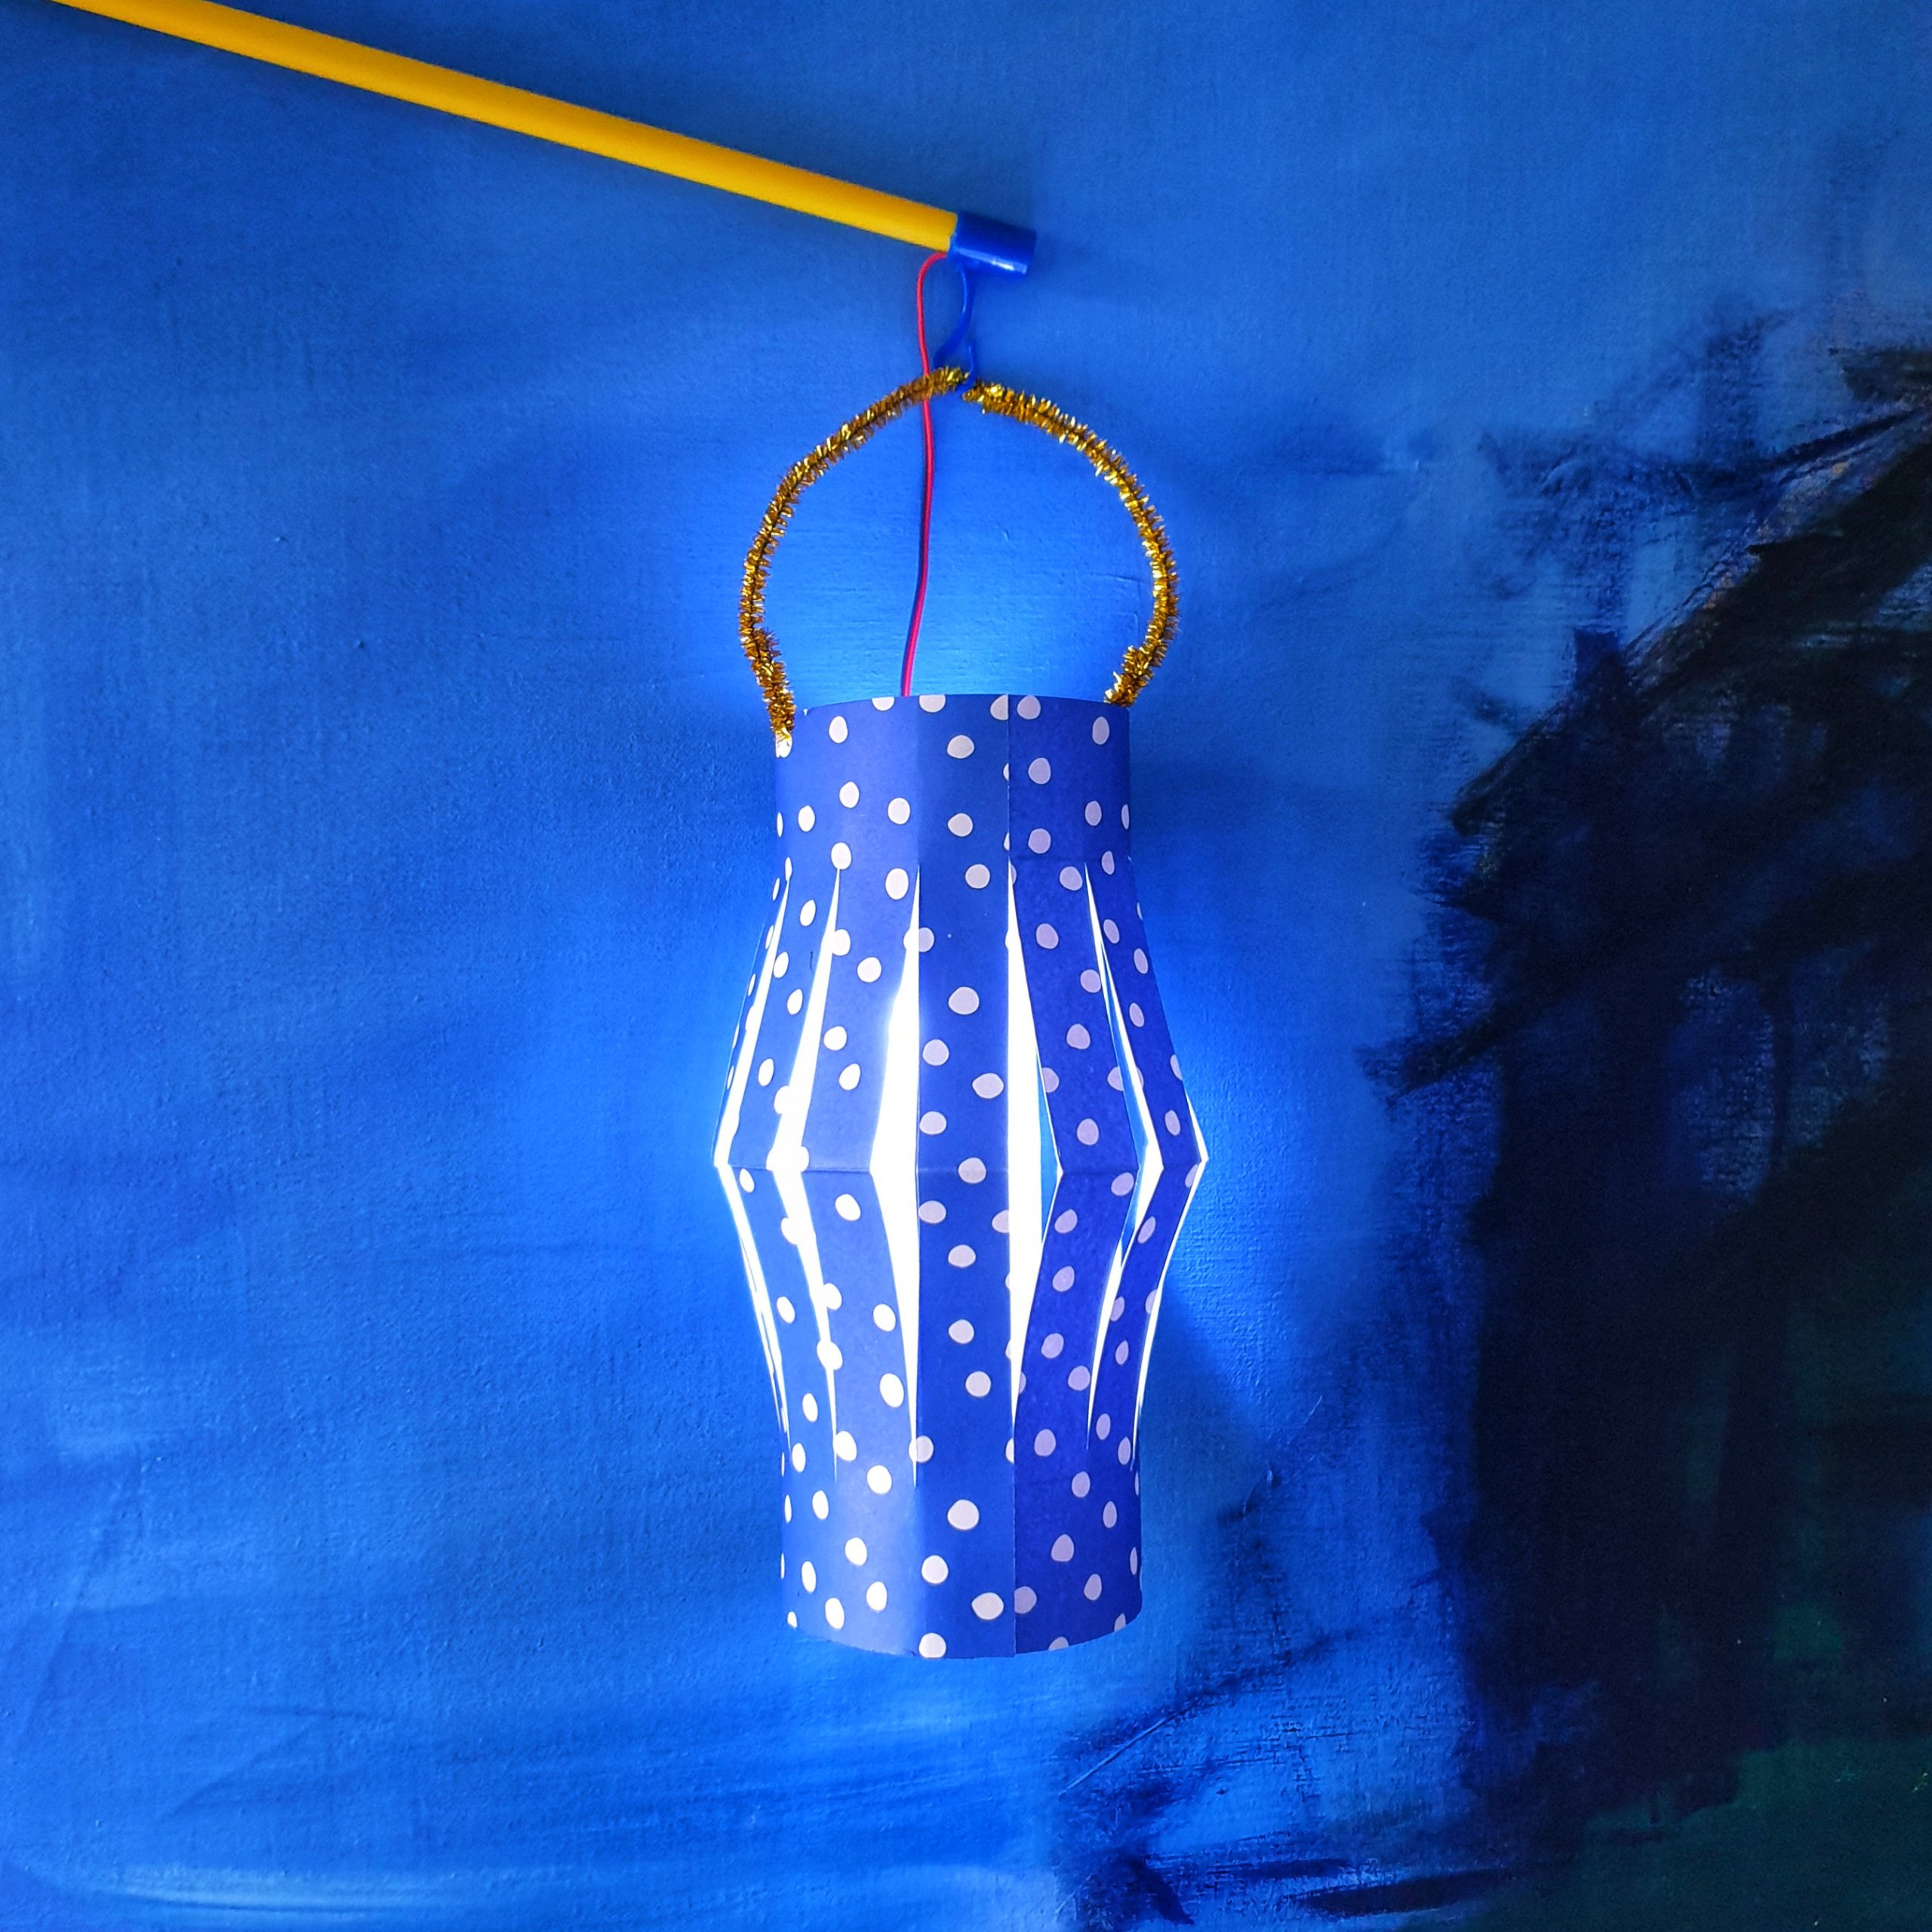 Mooie lantaarn of lampion voor Sint Maarten knutselen: heel veel ideeën. Een Chinese lantaarn kun je heel snel maken.